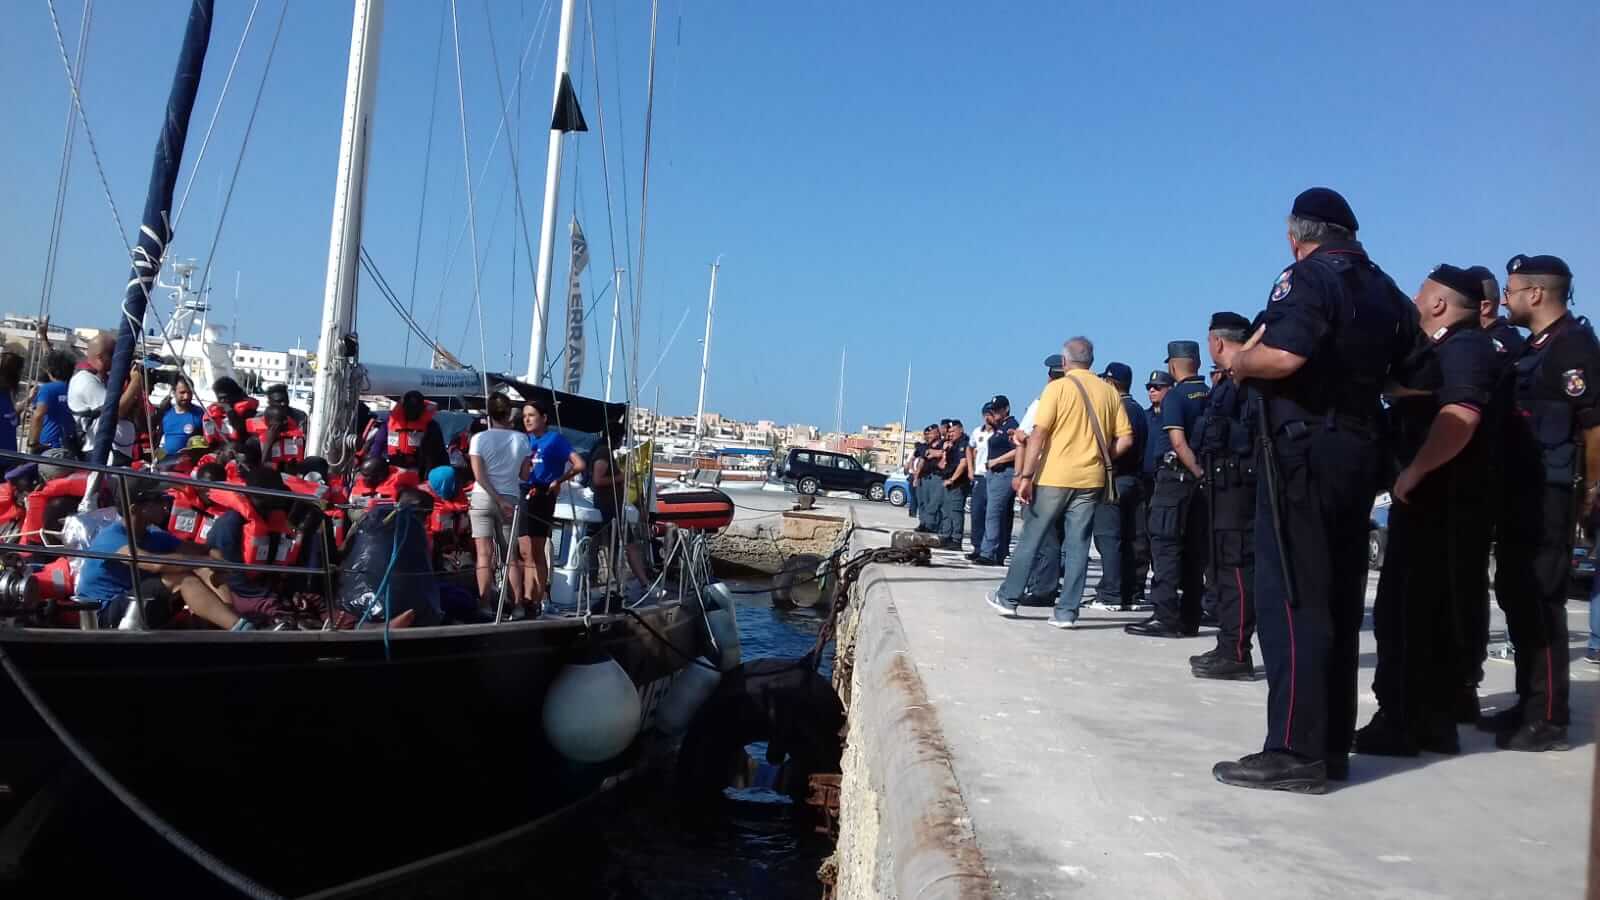 Alex attracca a Lampedusa: migranti sbarcano, comandante indagato e nave sequestrata